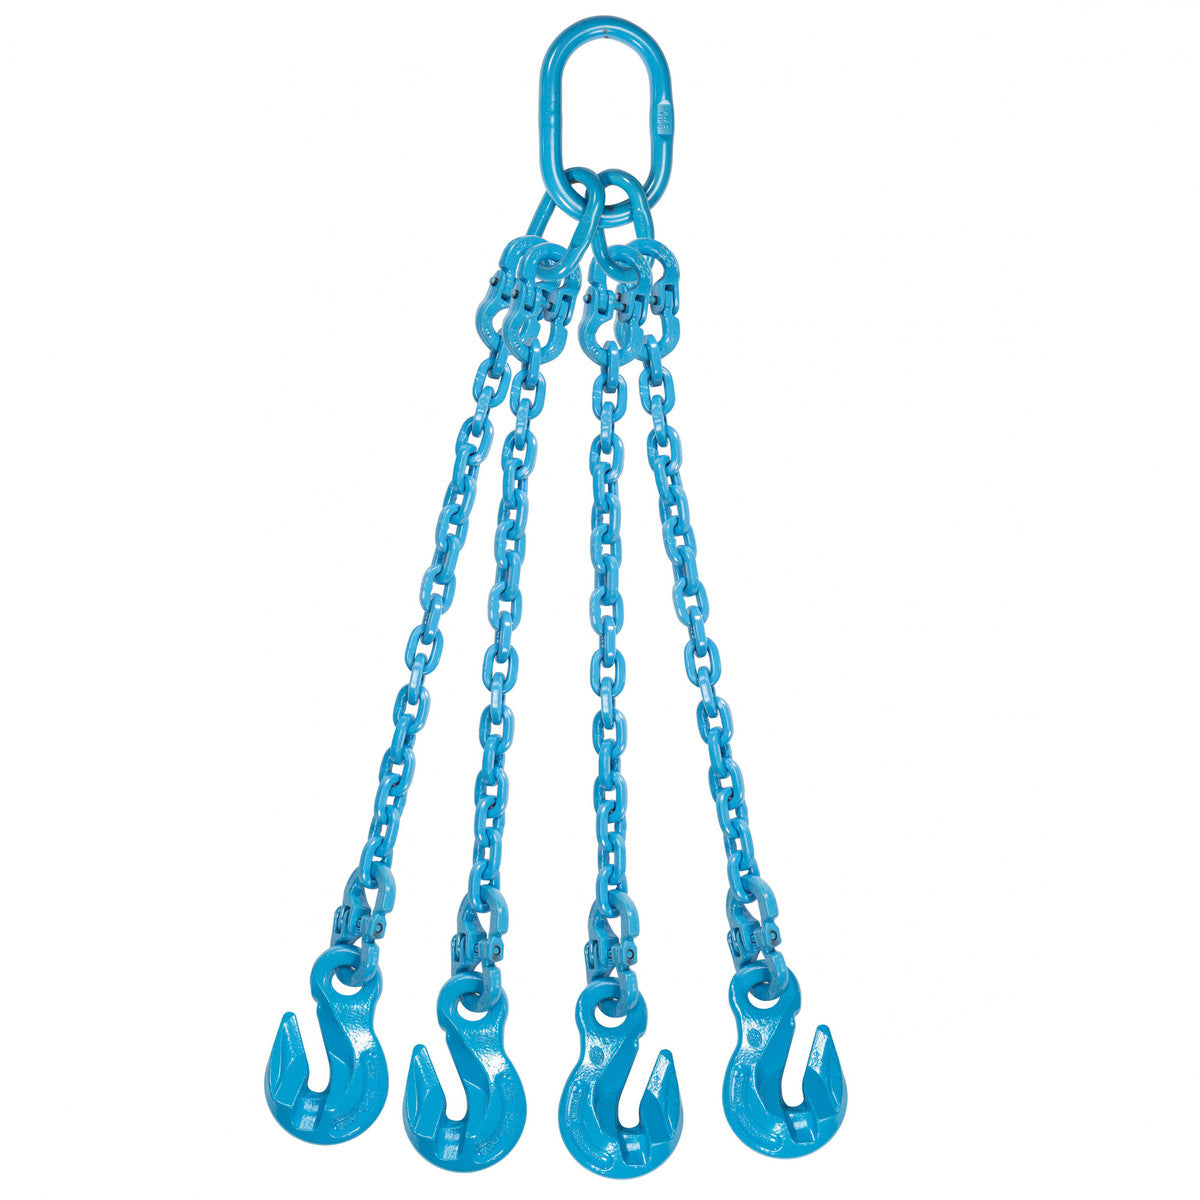 9/32" x 5' - Pewag 4 Leg Chain Sling w/ Grab Hooks - Grade 120